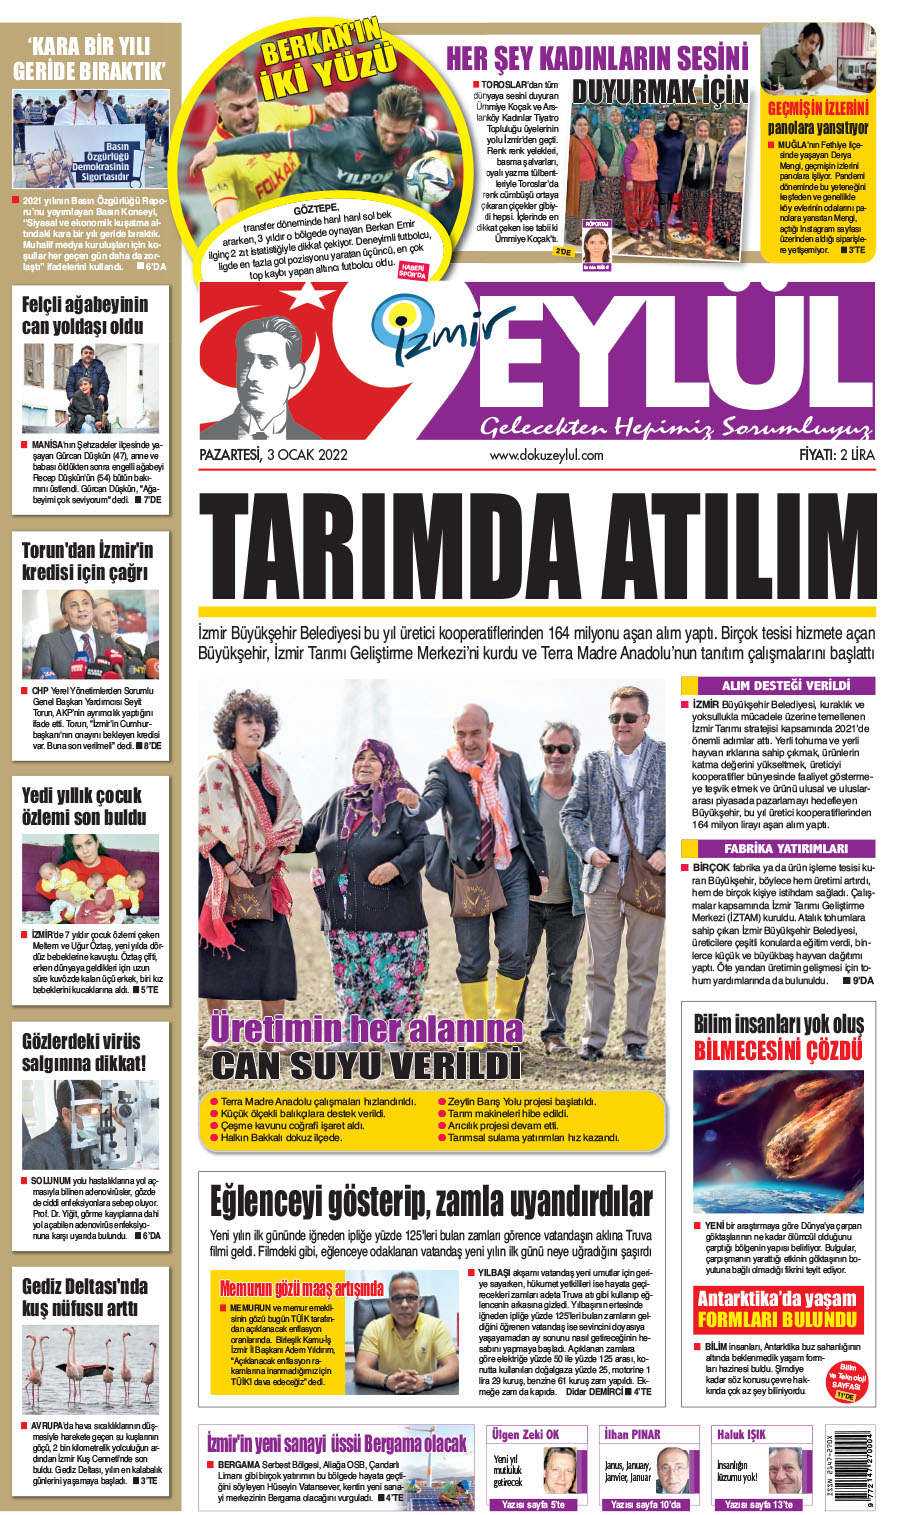 Dokuz Eylül Gazetesi | İzmir, Türkiye, Dünya'dan Güncel Haberler - 03.01.2022 Manşeti